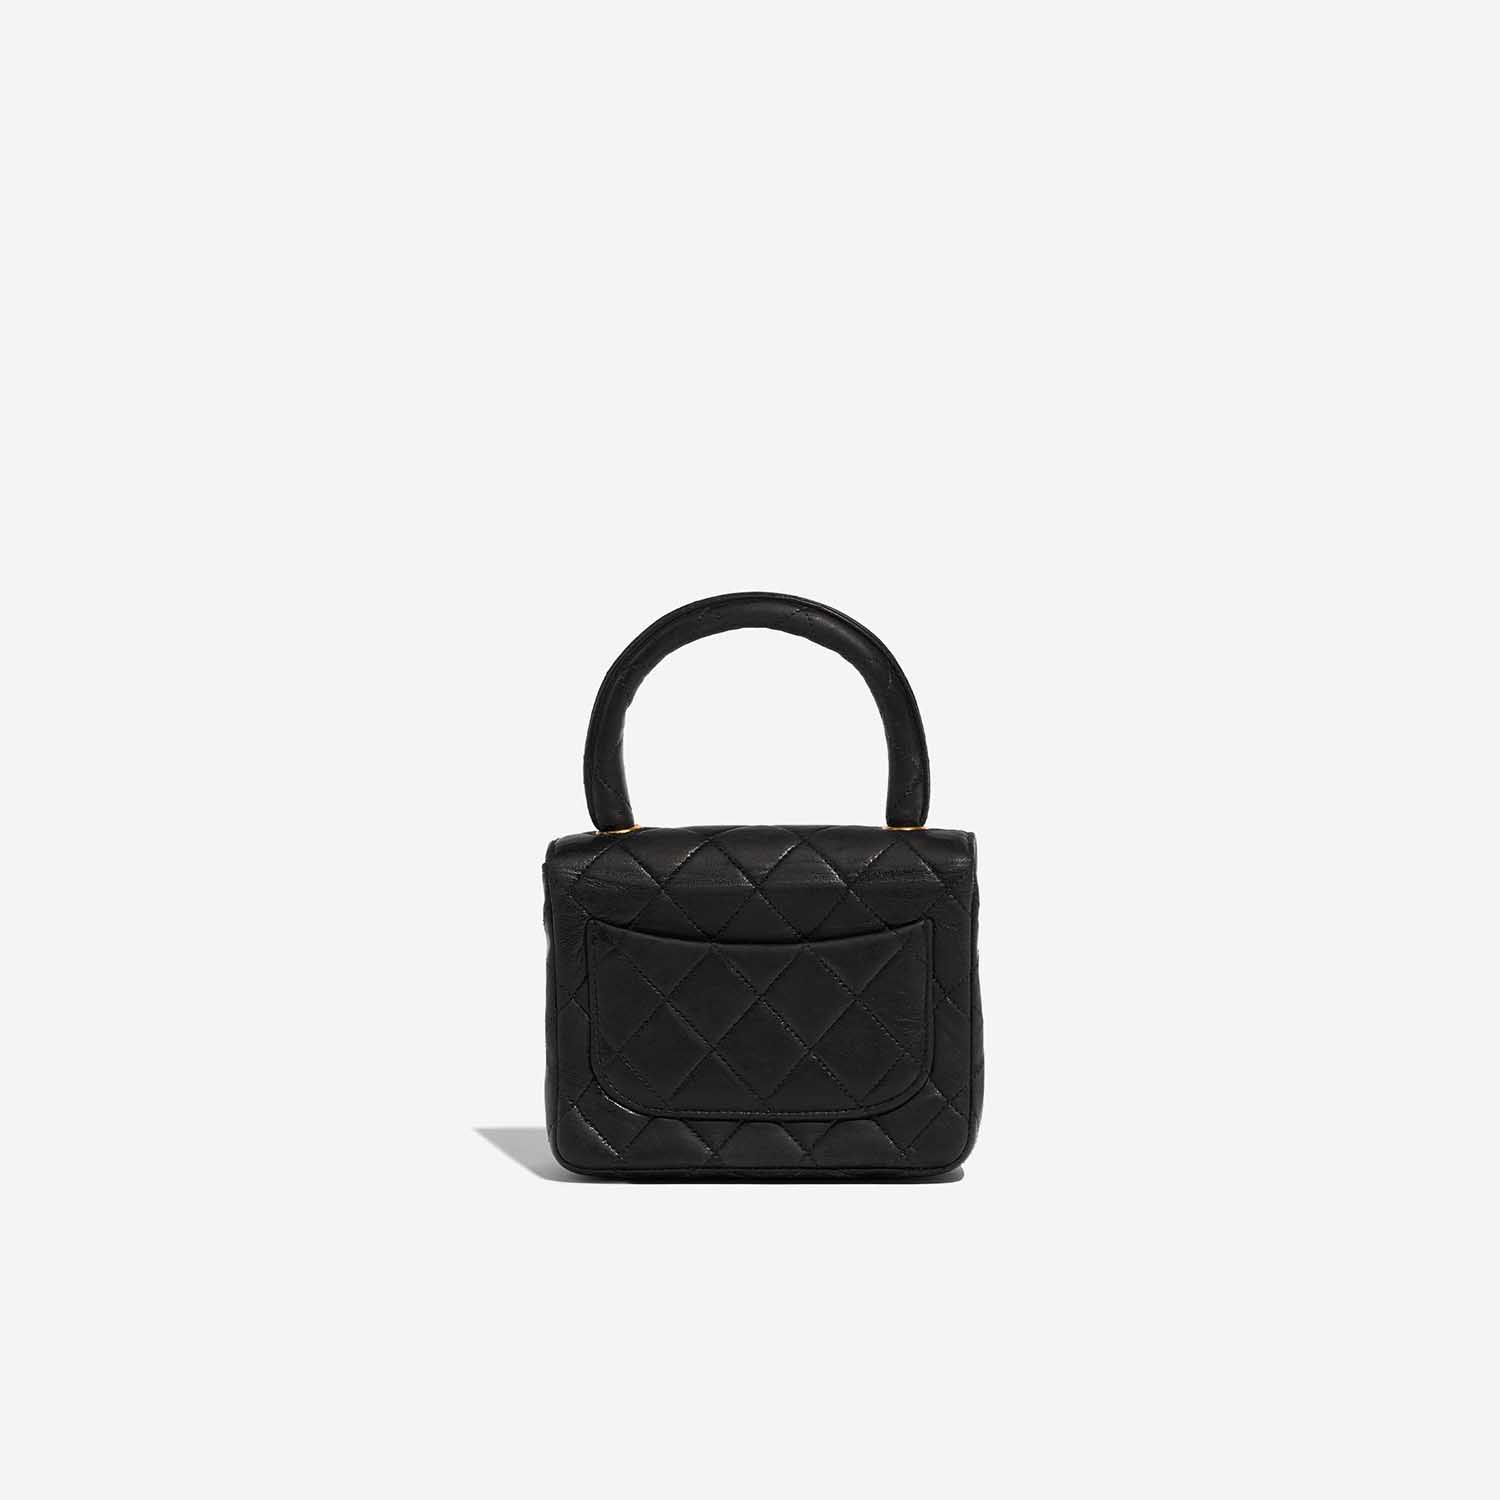 Sac Chanel d'occasion Timeless Poignée Petit Agneau Noir Noir Dos | Vendez votre sac de créateur sur Saclab.com